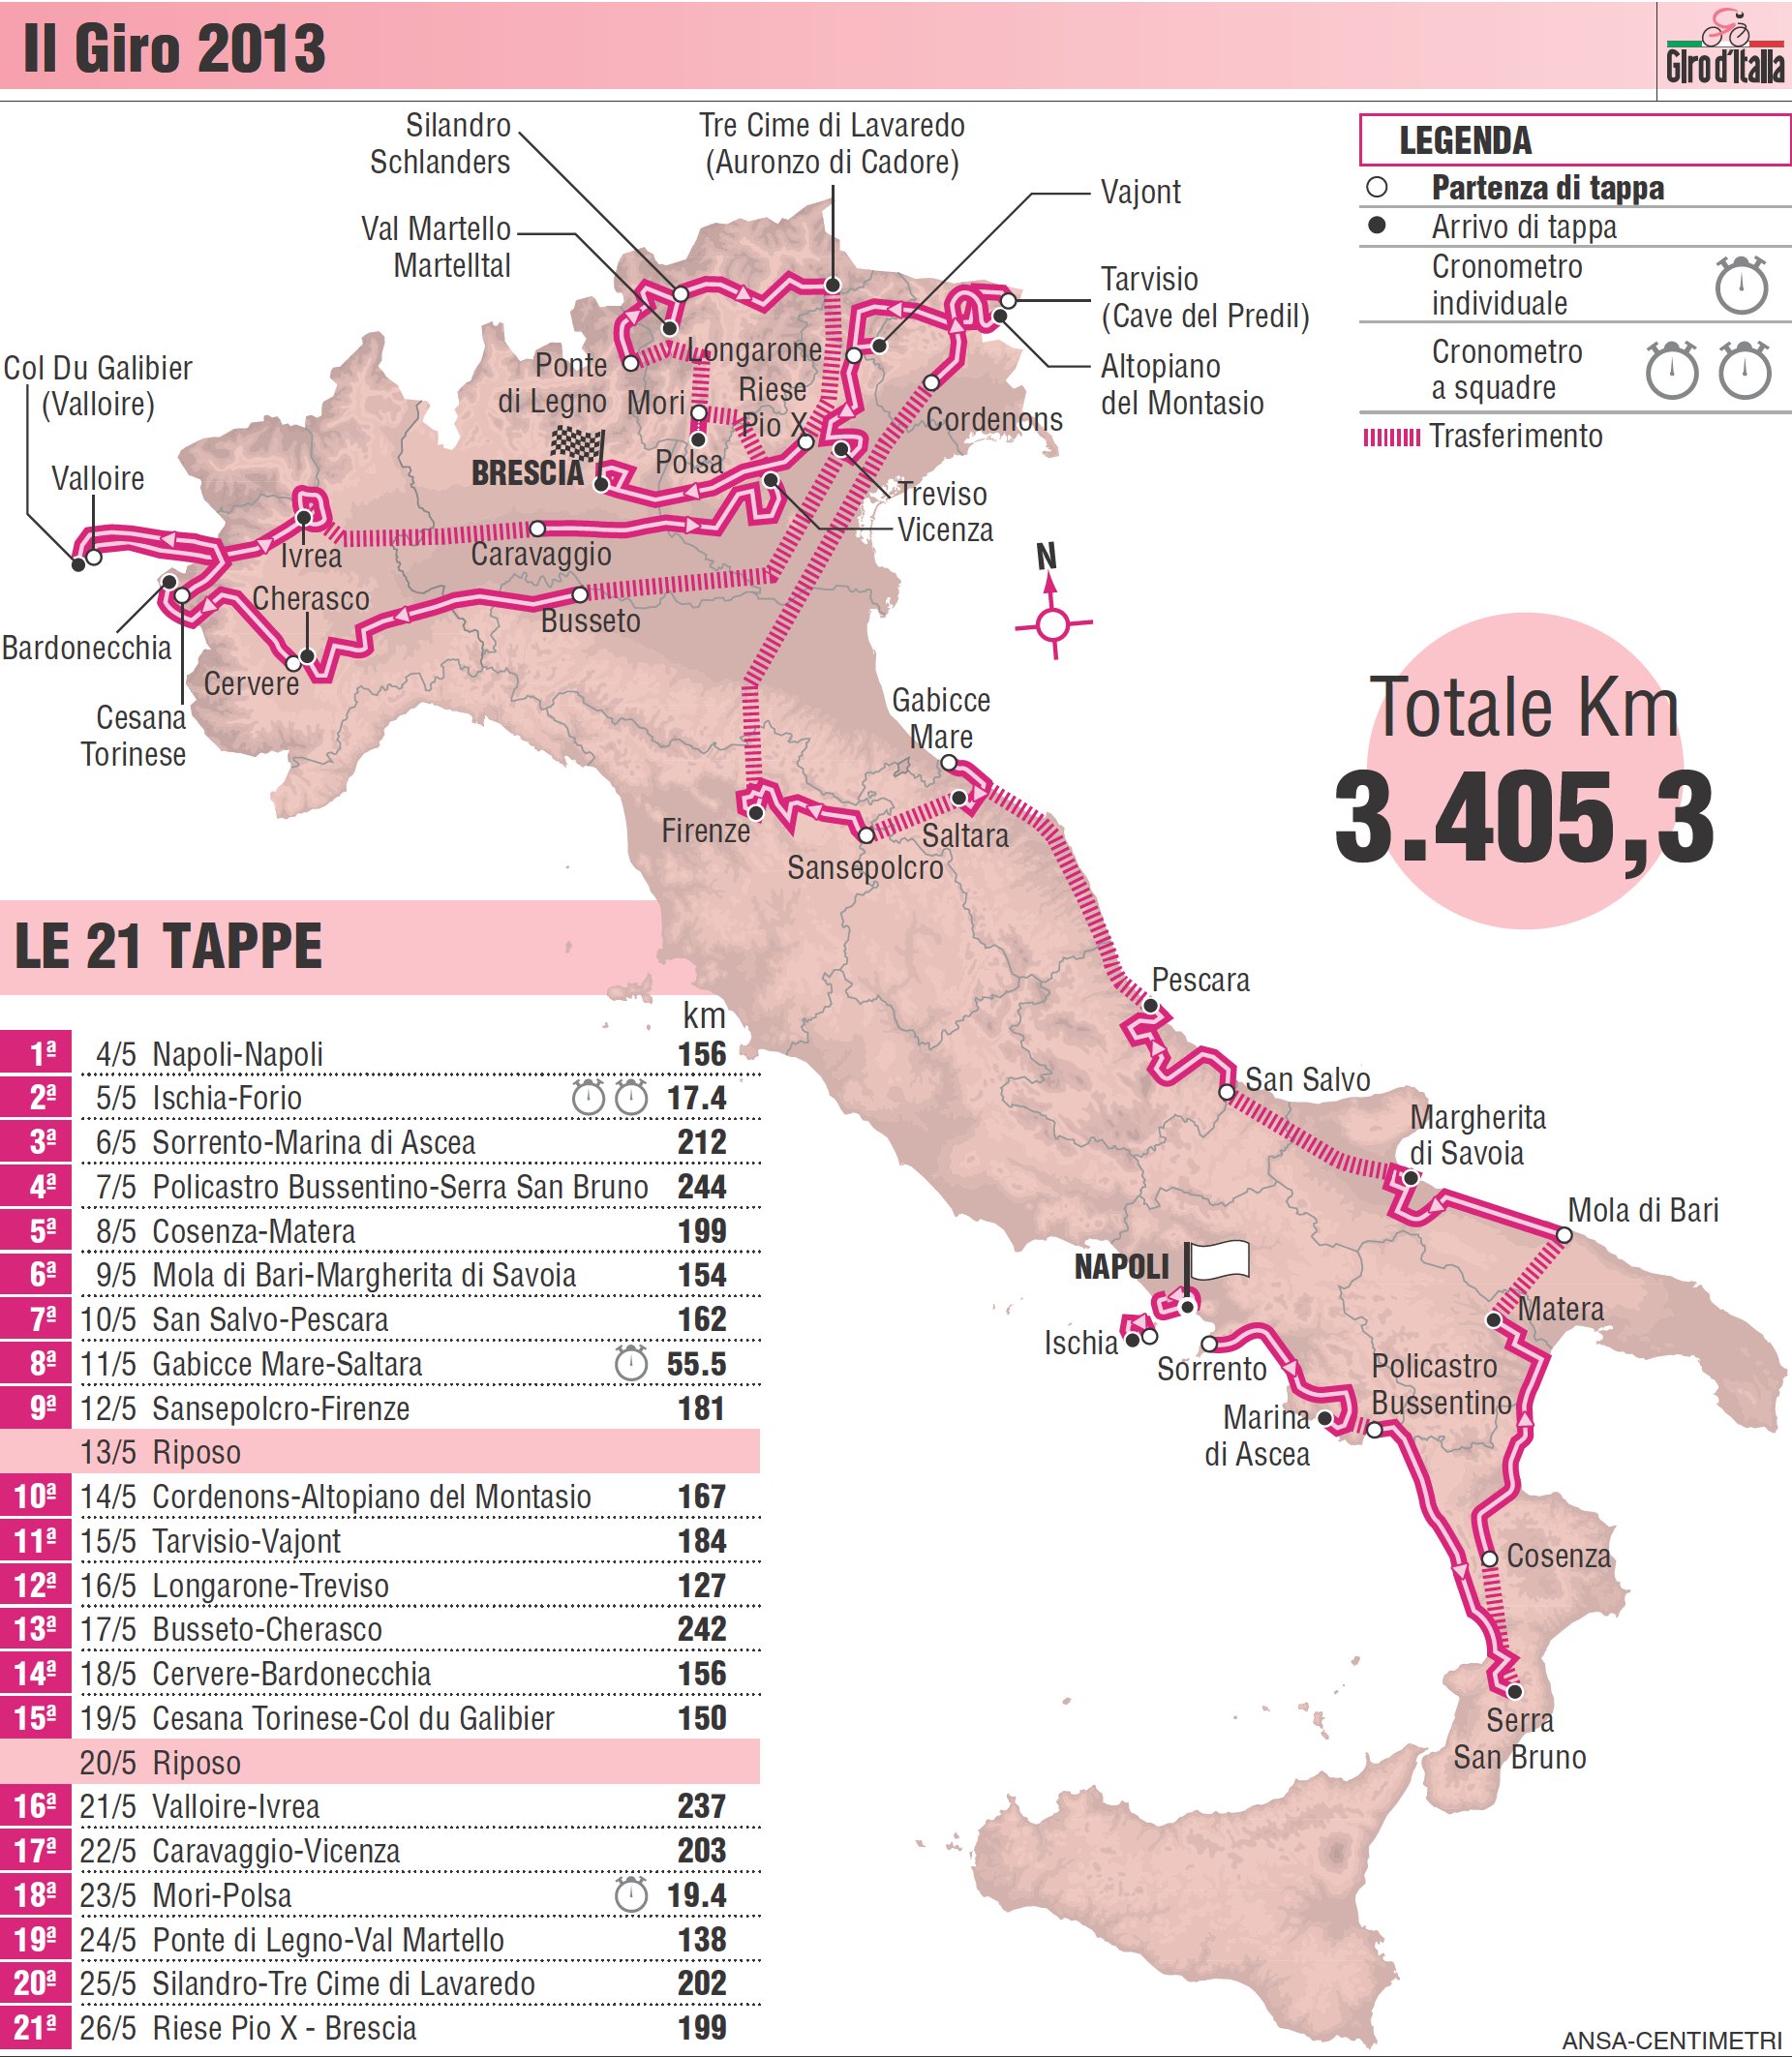 Giro d'Italia tappe, percorso, classifica e meteo MeteoWeb